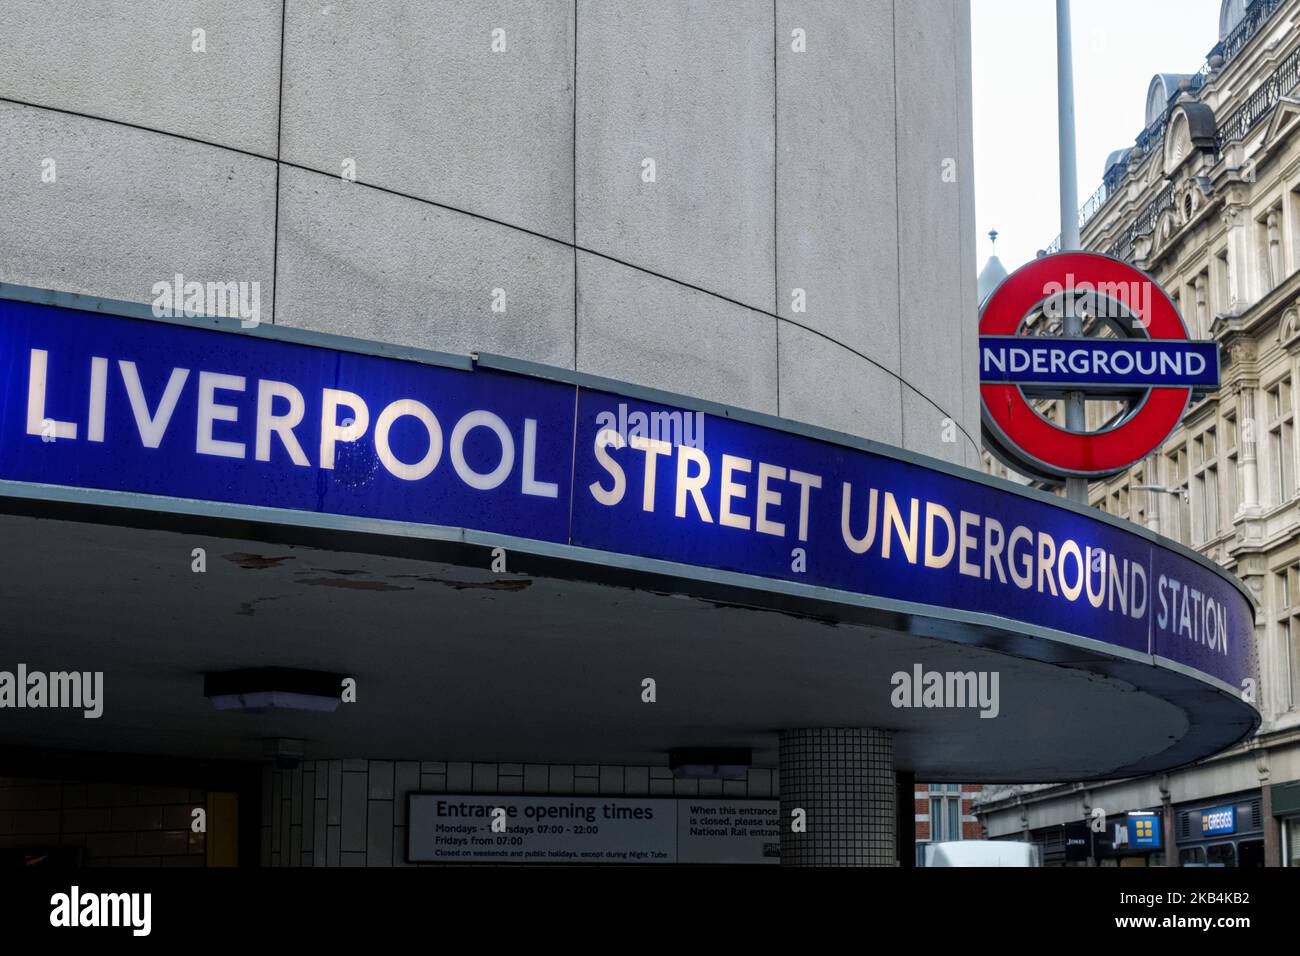 Entrance to Liverpool Street underground, tube station roundel sign London England United Kingdom UK Stock Photo